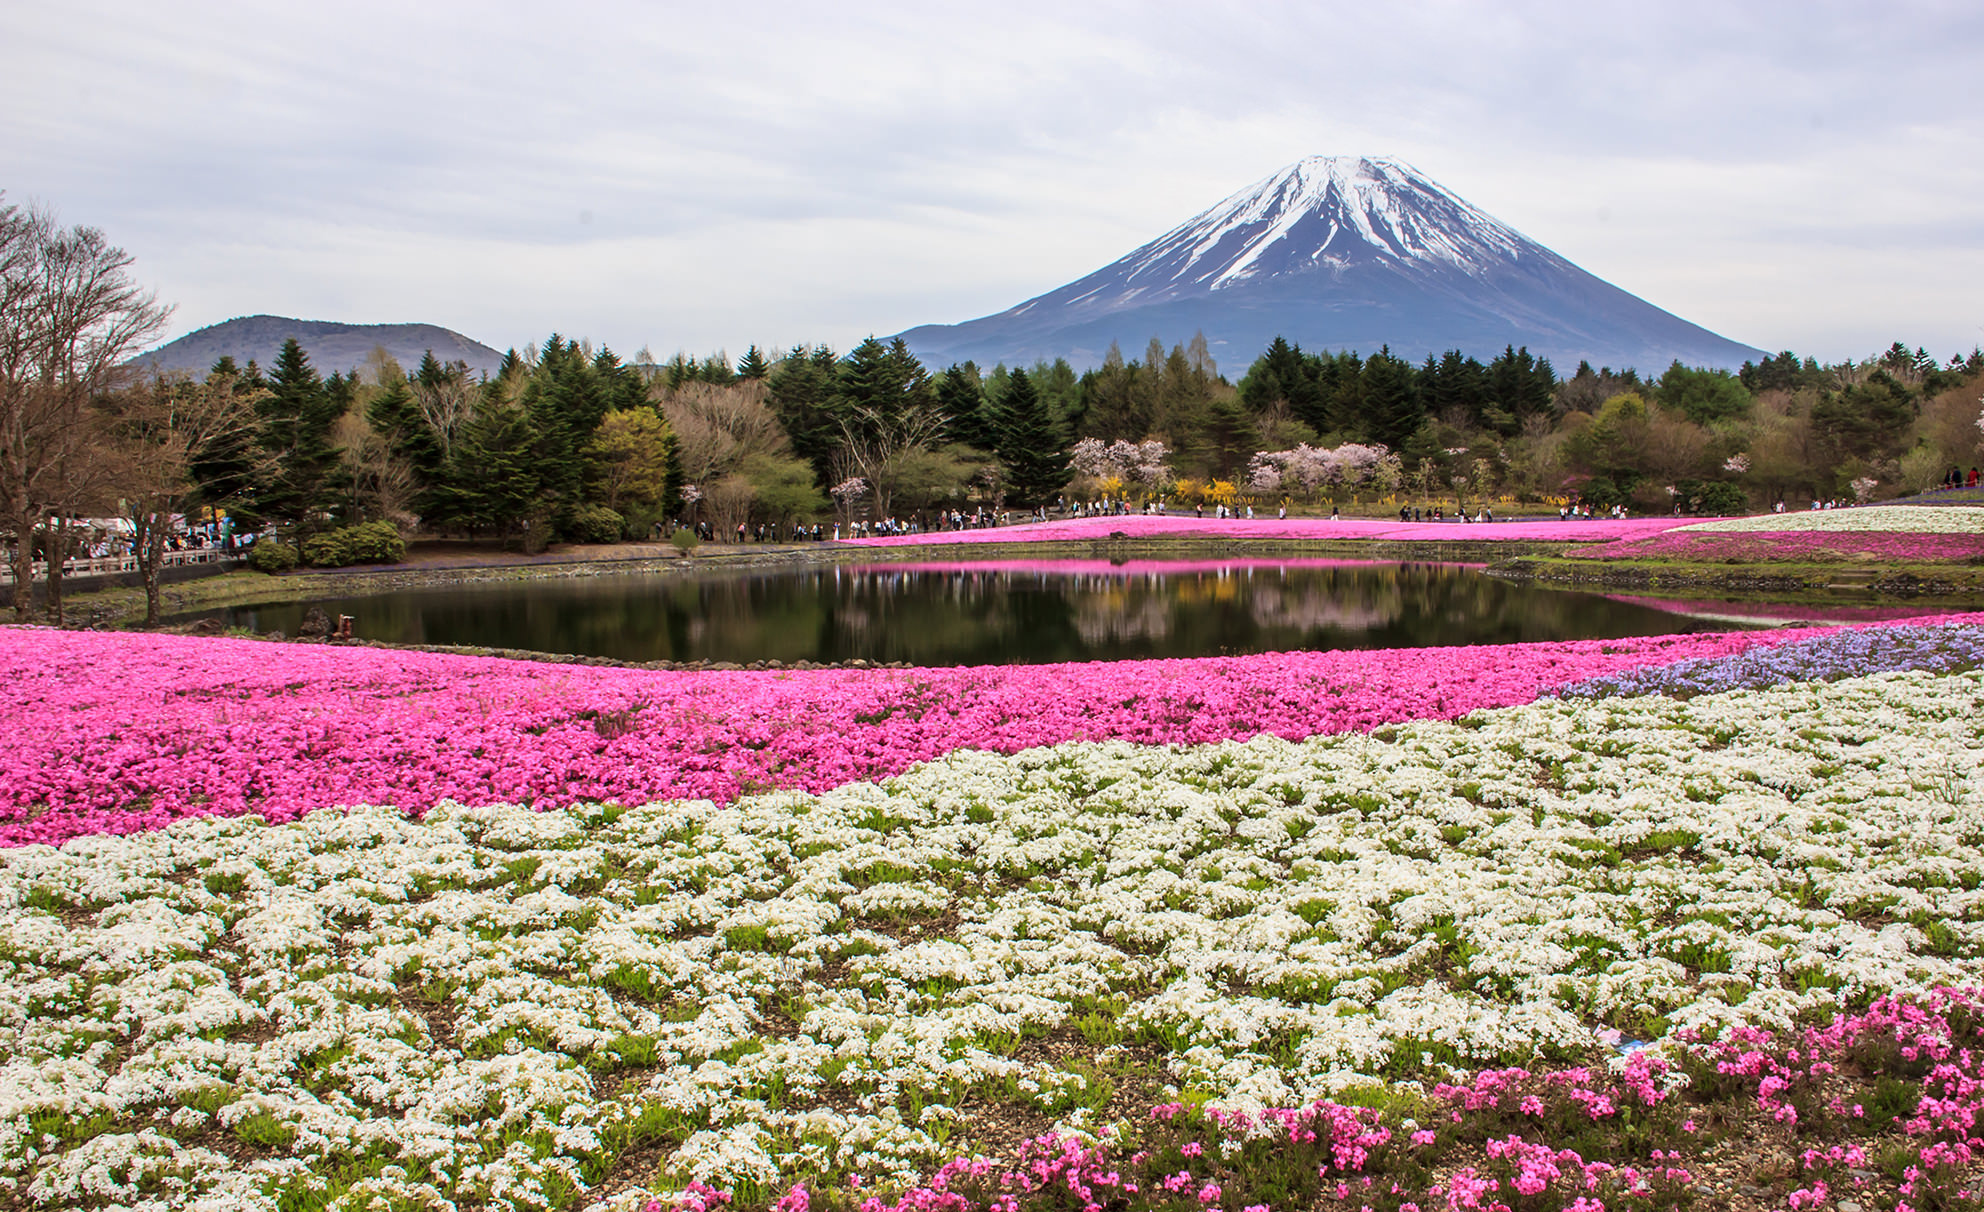 #ทัวร์ญี่ปุ่น #ทัวร์ชมดอกไม้ #BabyBlueEyes #Pinkmoss #Wisteria #Tulip #ทัวร์ญี่ปุ่นเดือนพฤษภาคม